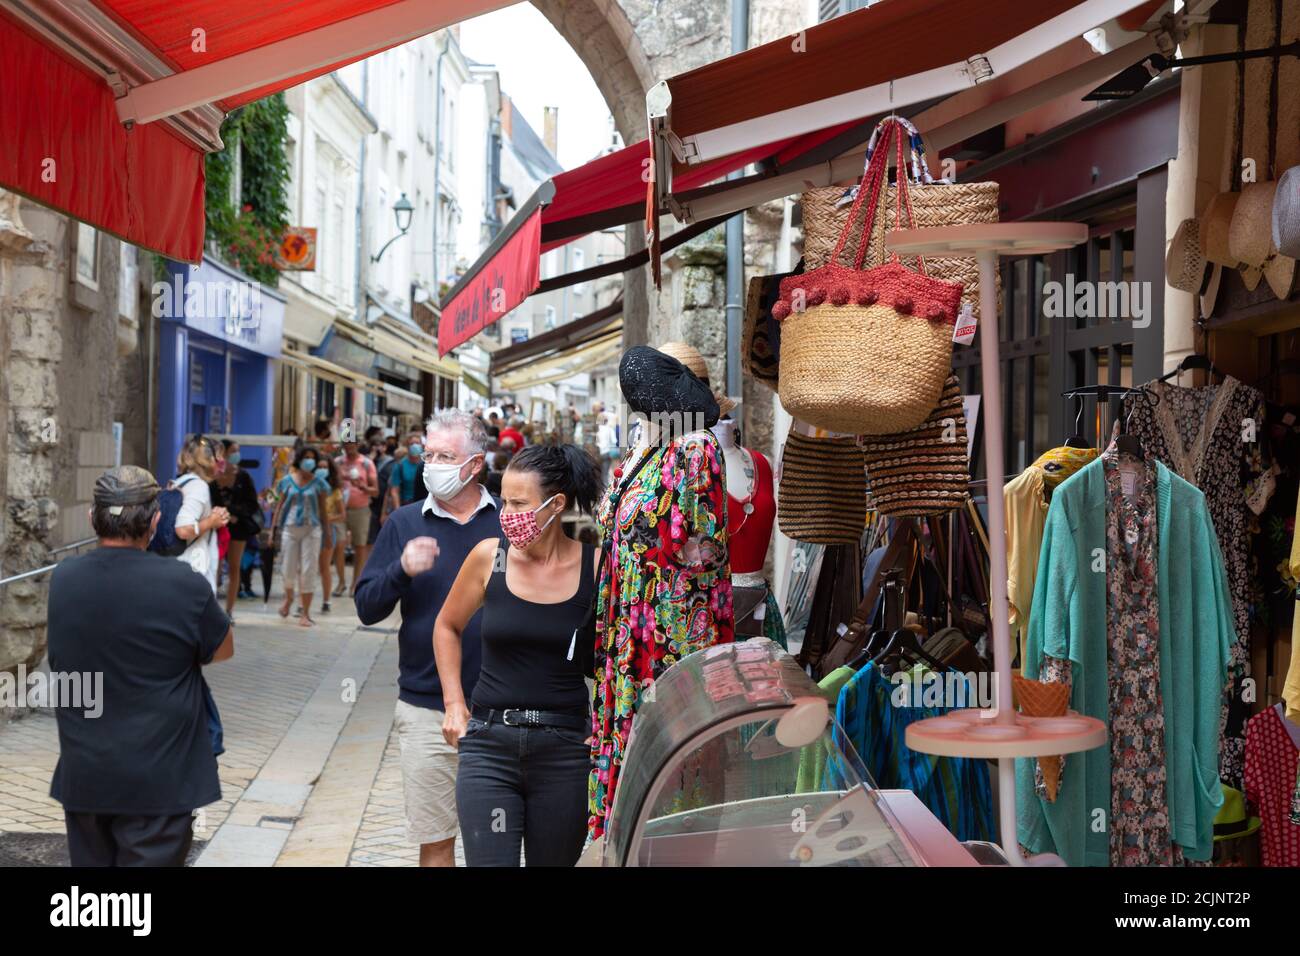 Frankreich Straßenszene während der COVID 19 Virus-Pandemie mit maskierten Menschen auf der Straße, Altstadt von Amboise, Loire-Tal Frankreich Europa, Aug 2020 Stockfoto